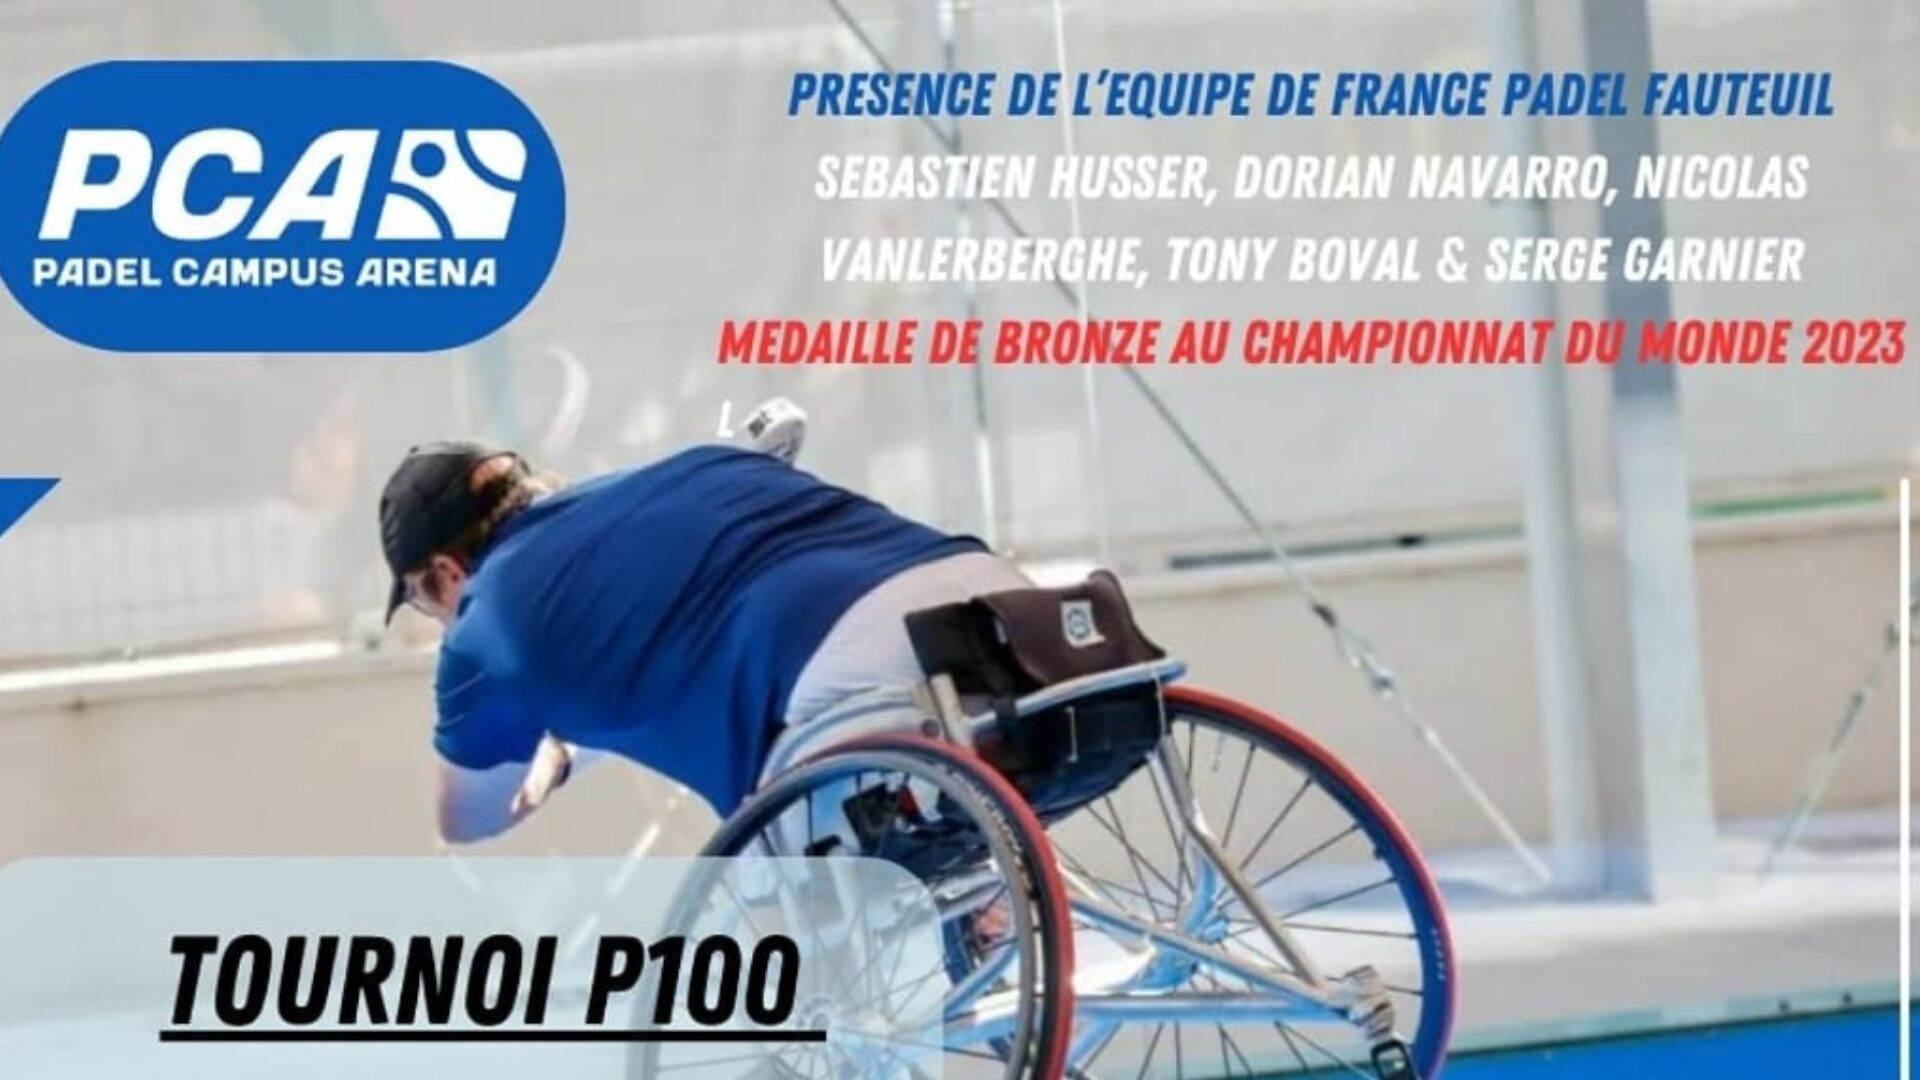 Padel-fauteuil – Un P100 à Padel Campus Arena avec 11 des 20 meilleurs français !